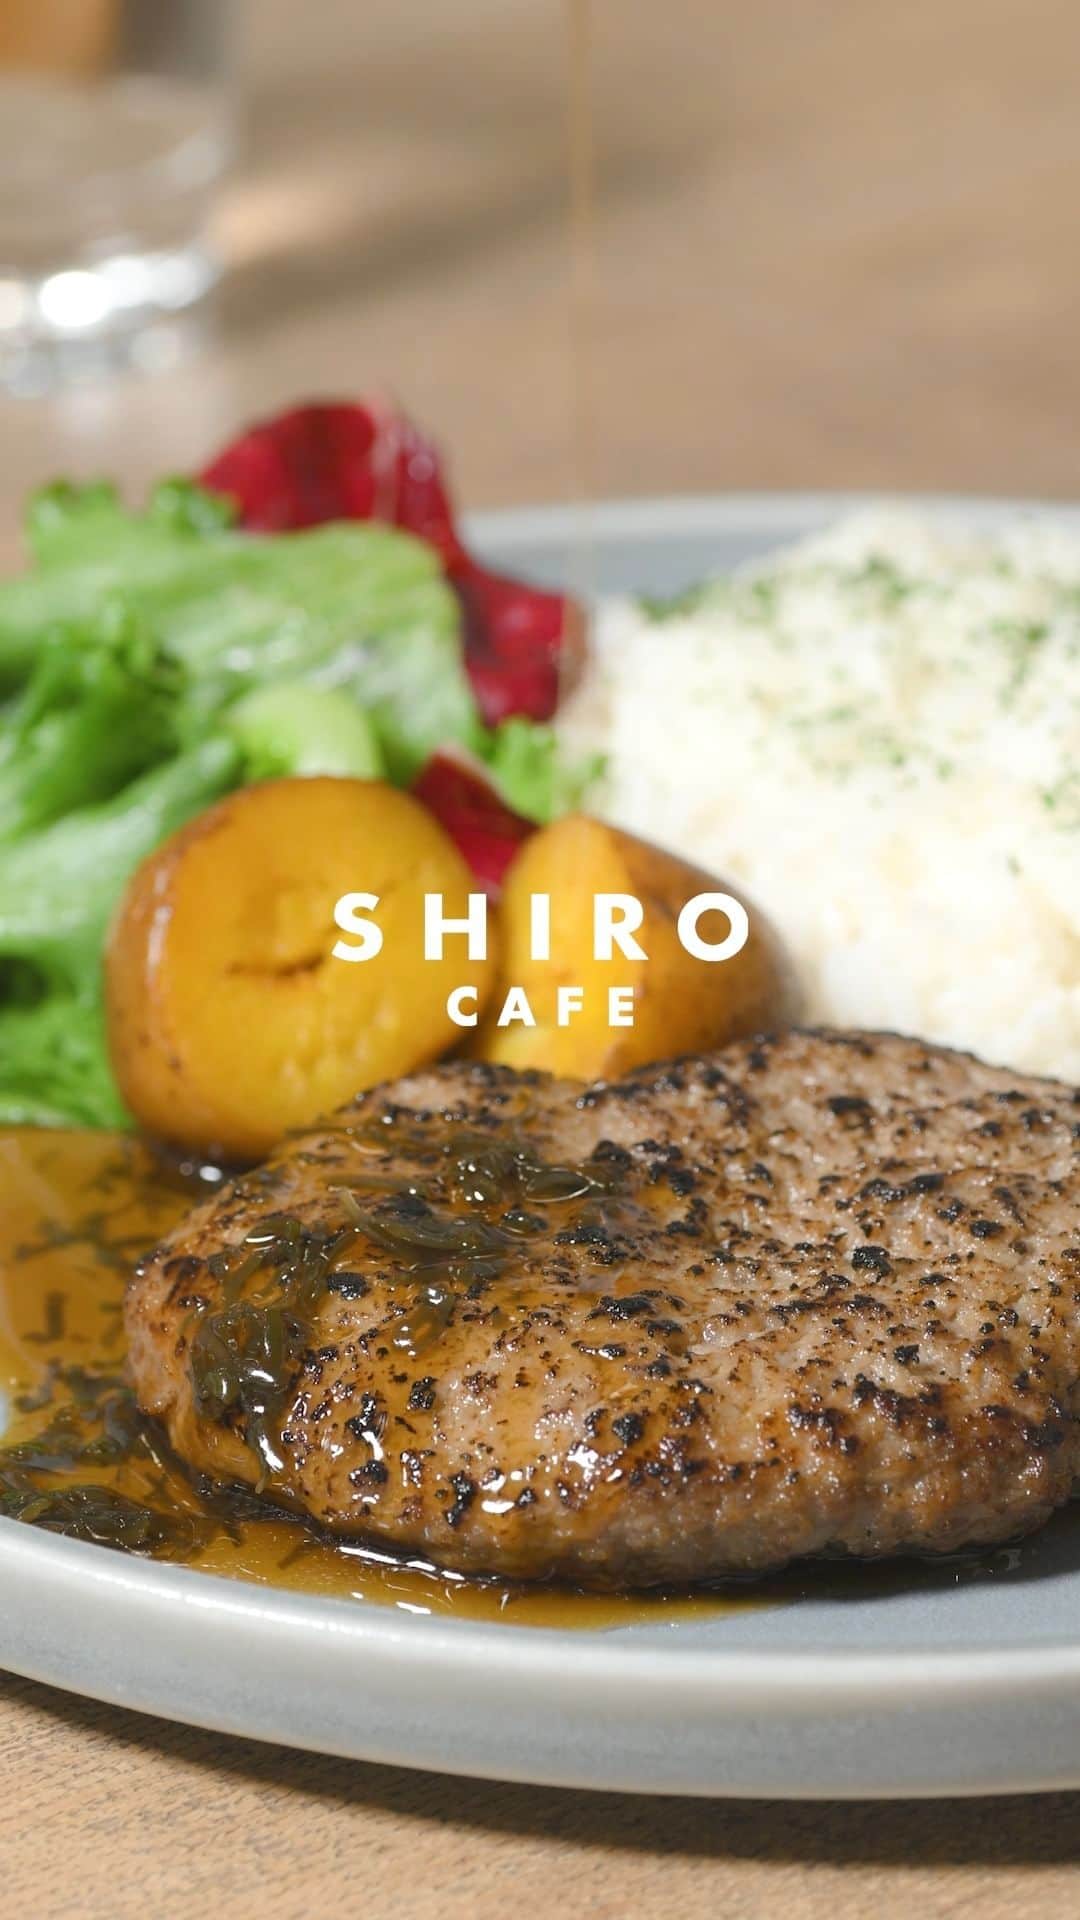 shiroのインスタグラム：「【SHIRO CAFEに新メニューが登場】 SHIRO CAFE砂川本店・自由が丘店に「特製SHIROハンバーグディッシュ」が新登場。 北海道産の合い挽き肉を使用したハンバーグをふっくらジューシーに焼き上げ、がごめ昆布ポン酢ソースを別添えで。とろみのあるコク深いポン酢ソースは、くせになる味わいです。 北海道野菜のフレッシュなサラダと、自然の甘みが詰まったインカのめざめのポテトフライと共にお楽しみください。  ■特製SHIROハンバーグディッシュ がごめ昆布ポン酢ソース 砂川本店 1,540円(税込) / 自由が丘店 1,815円(税込) ※ライス大盛り +110円(税込)  Supervised by @takaoggi Video by @keitasawa.photo  ────────────────── 【店舗情報】 SHIRO 砂川本店  北海道砂川市豊沼町54-1 みんなの工場内 TEL：0125-52-9646 営業時間：11:00～19:00（ラストオーダー 18:30）  SHIRO 自由が丘店 東京都目黒区自由が丘2丁目9-14 アソルティ1F・B1F TEL：03-5701-9146 営業時間：11:00～20:00（ラストオーダー 19:30） ──────────────────  #SHIRO #SHIROCAFE #SHIRO砂川本店 #みんなの工場 #SHIRO自由が丘店」